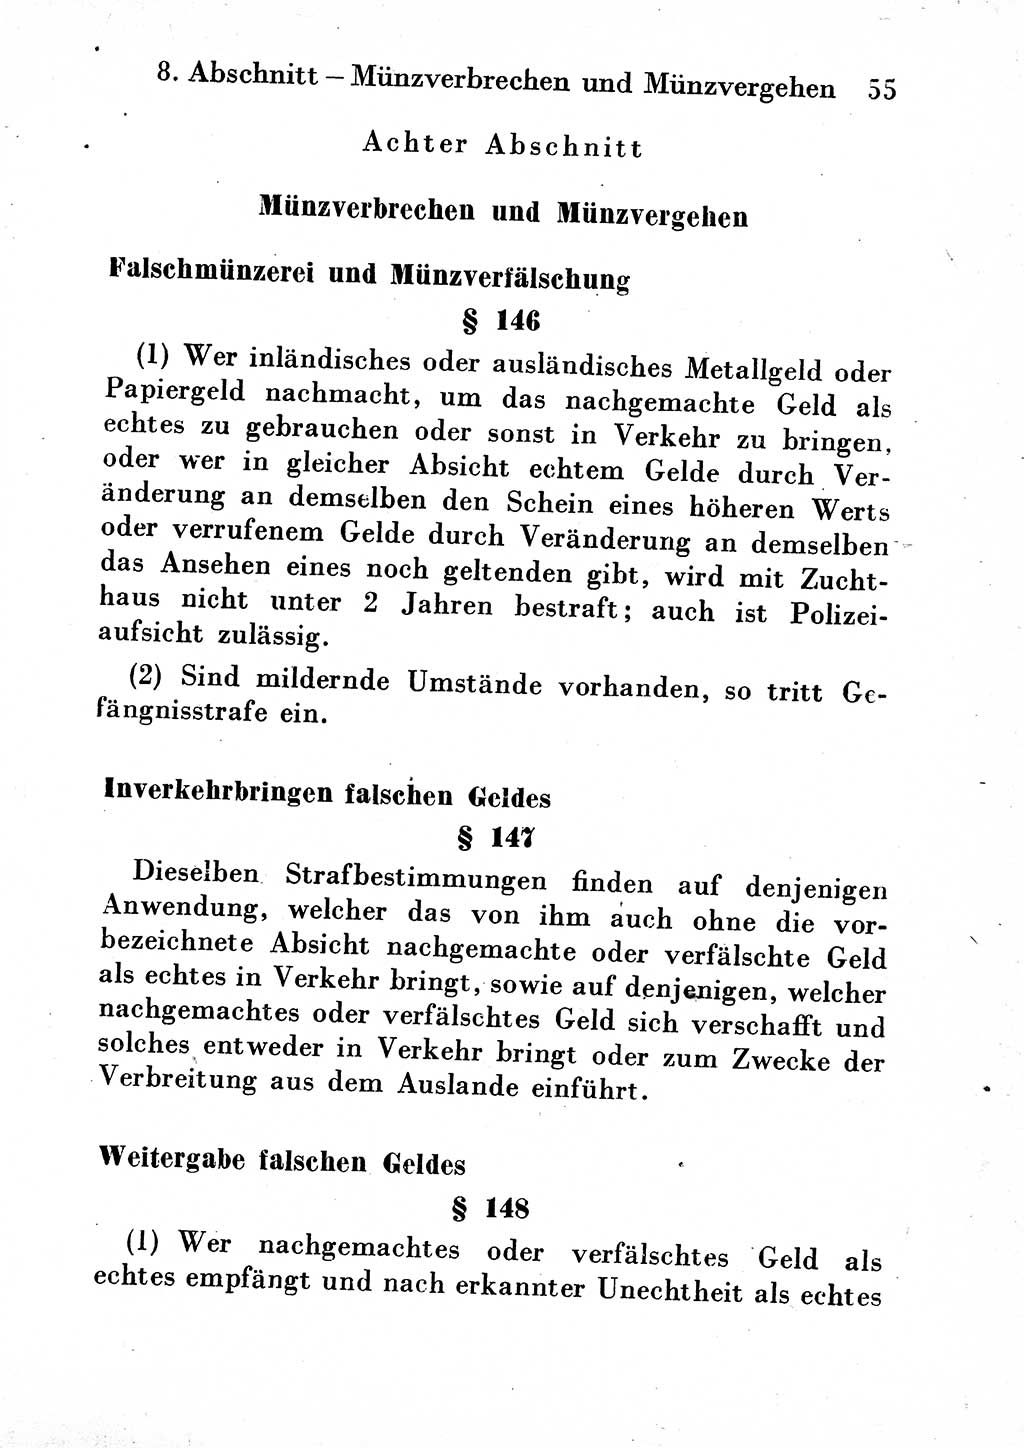 Strafgesetzbuch (StGB) und andere Strafgesetze [Deutsche Demokratische Republik (DDR)] 1954, Seite 55 (StGB Strafges. DDR 1954, S. 55)